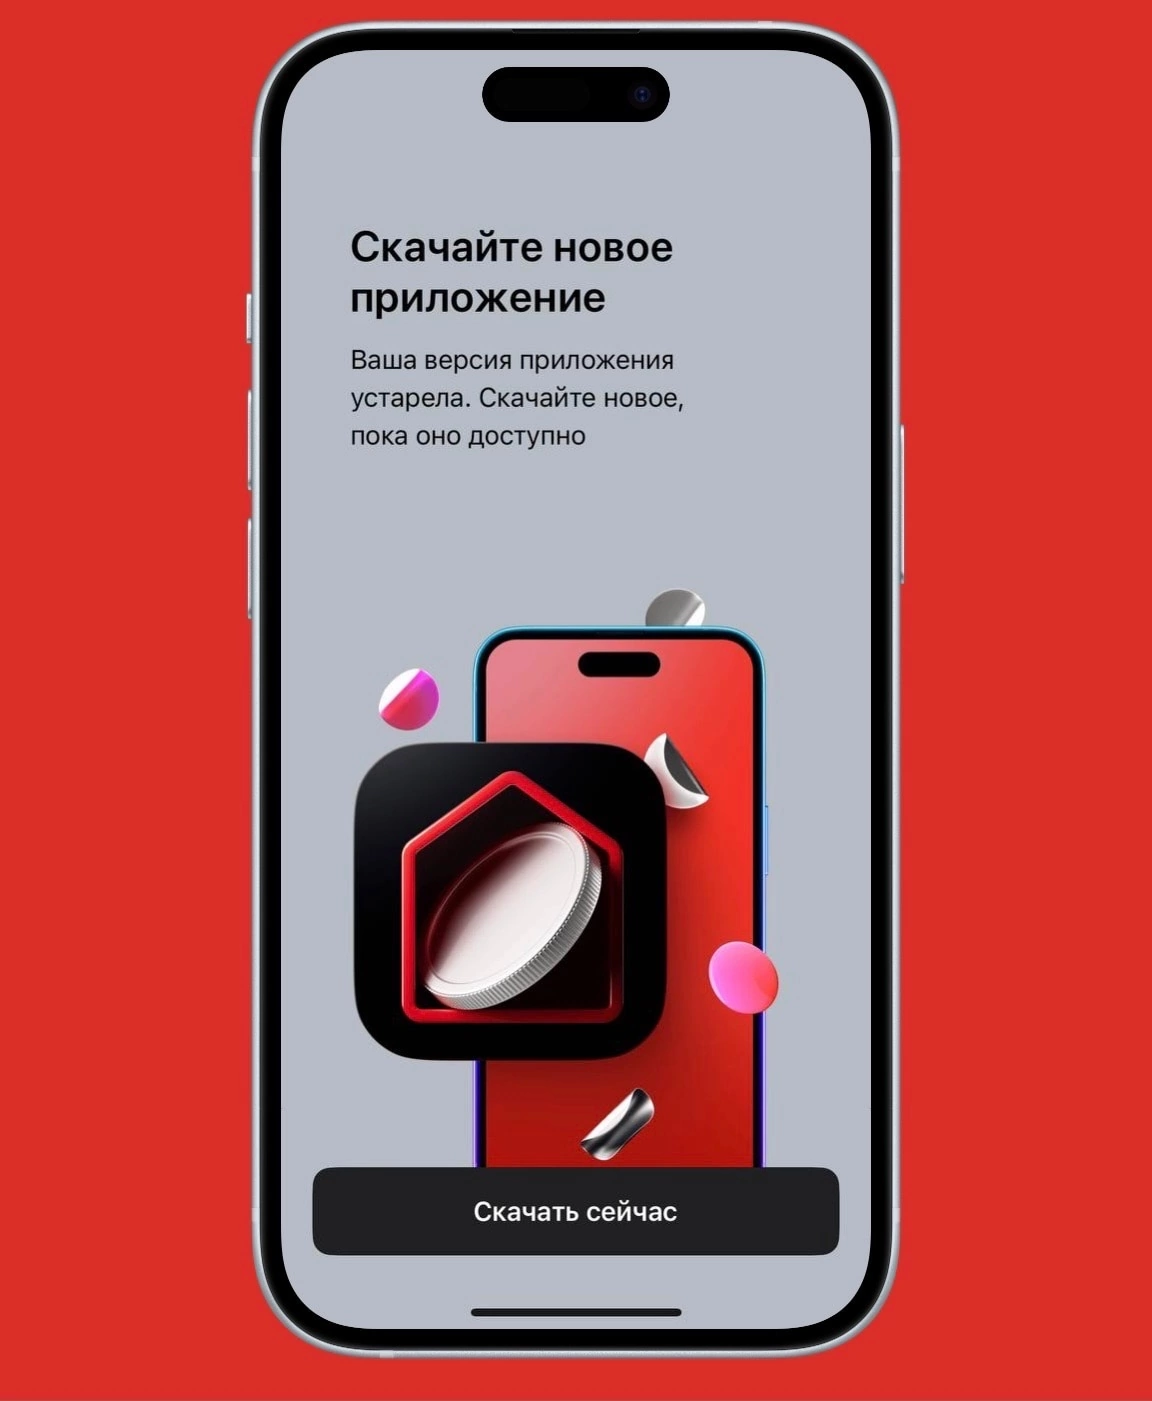 Банк уже рекомендует установить новое приложение в App Store, пока оно доступно там